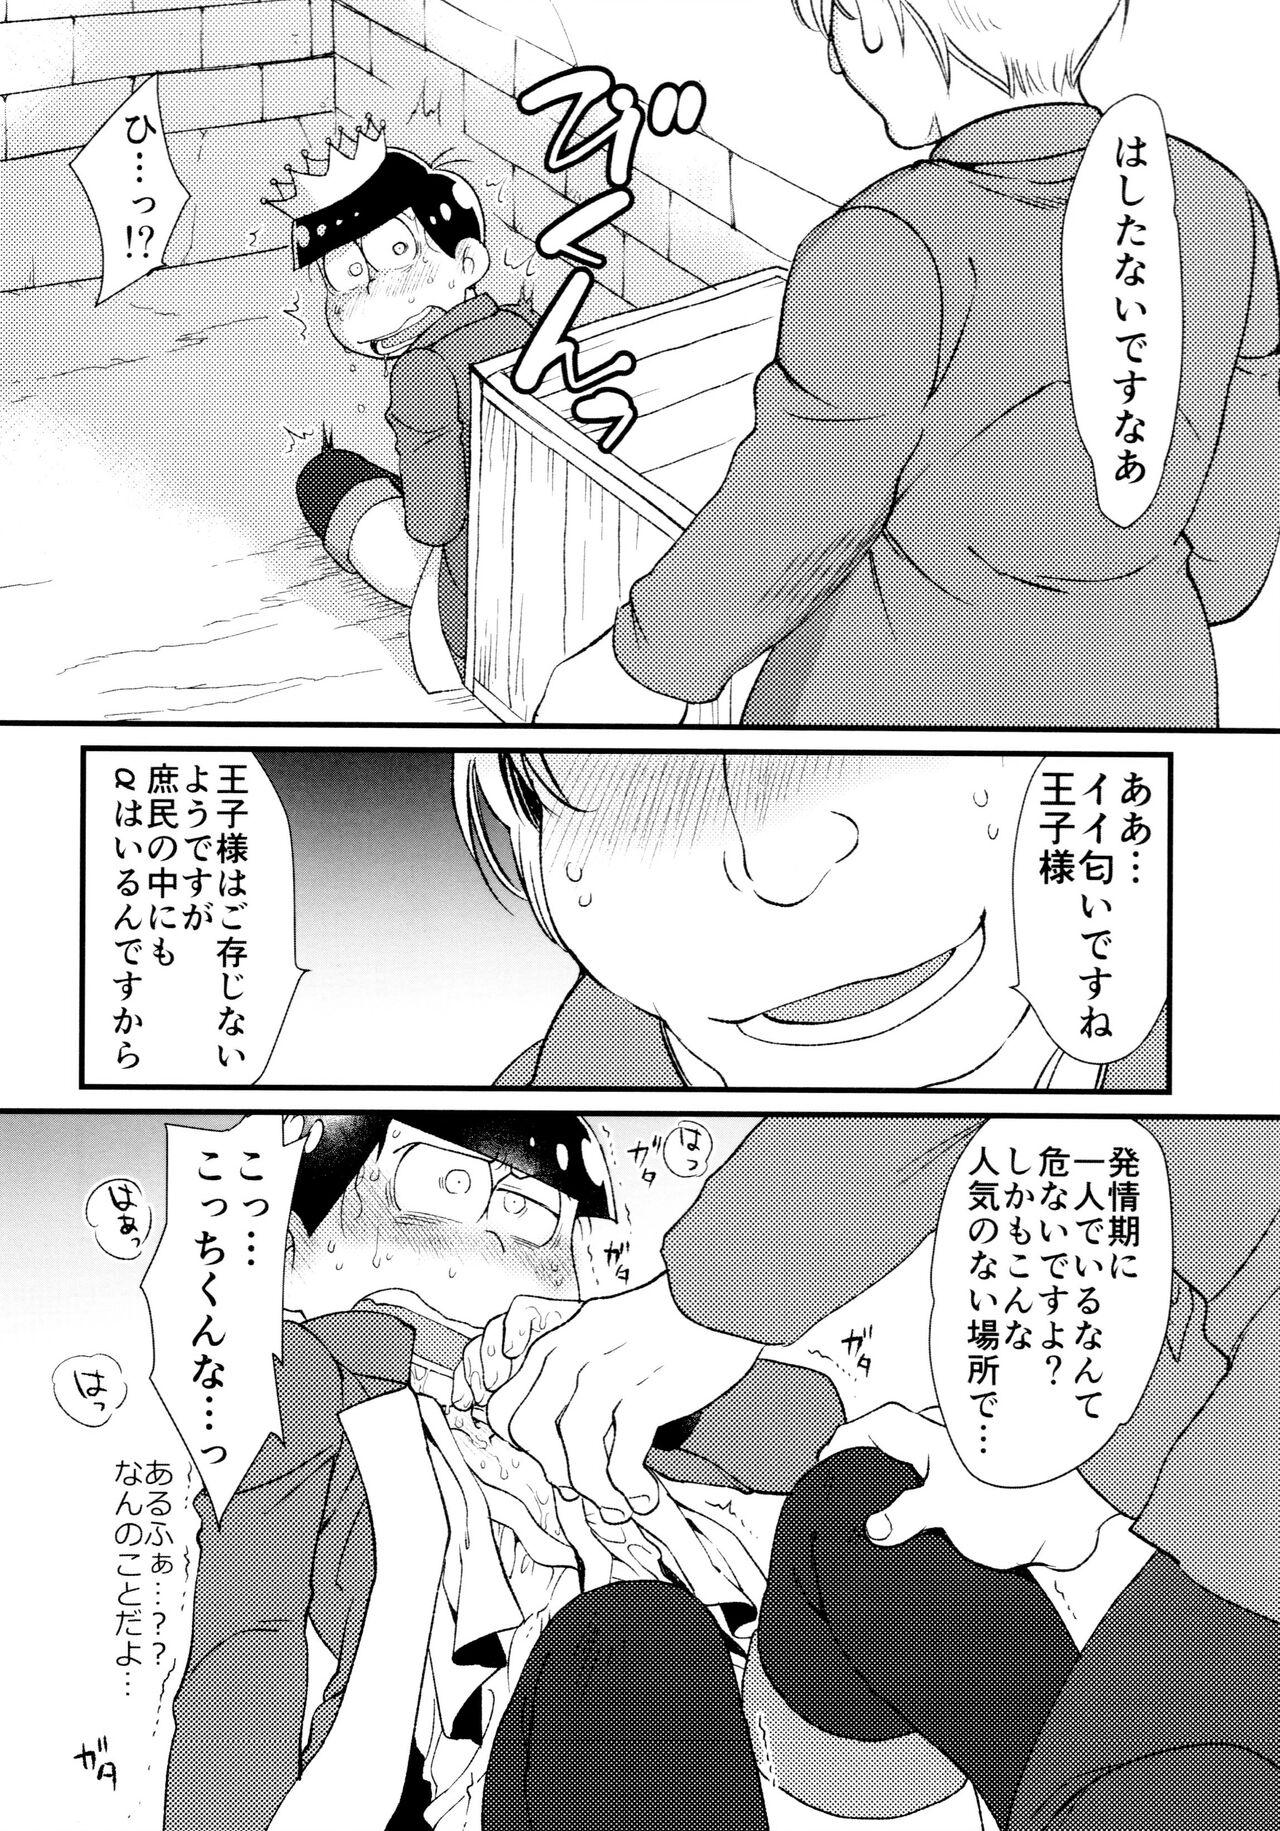 Amateur Sex Anata wa watashinounmei no hito - Osomatsu san Sesso - Page 9